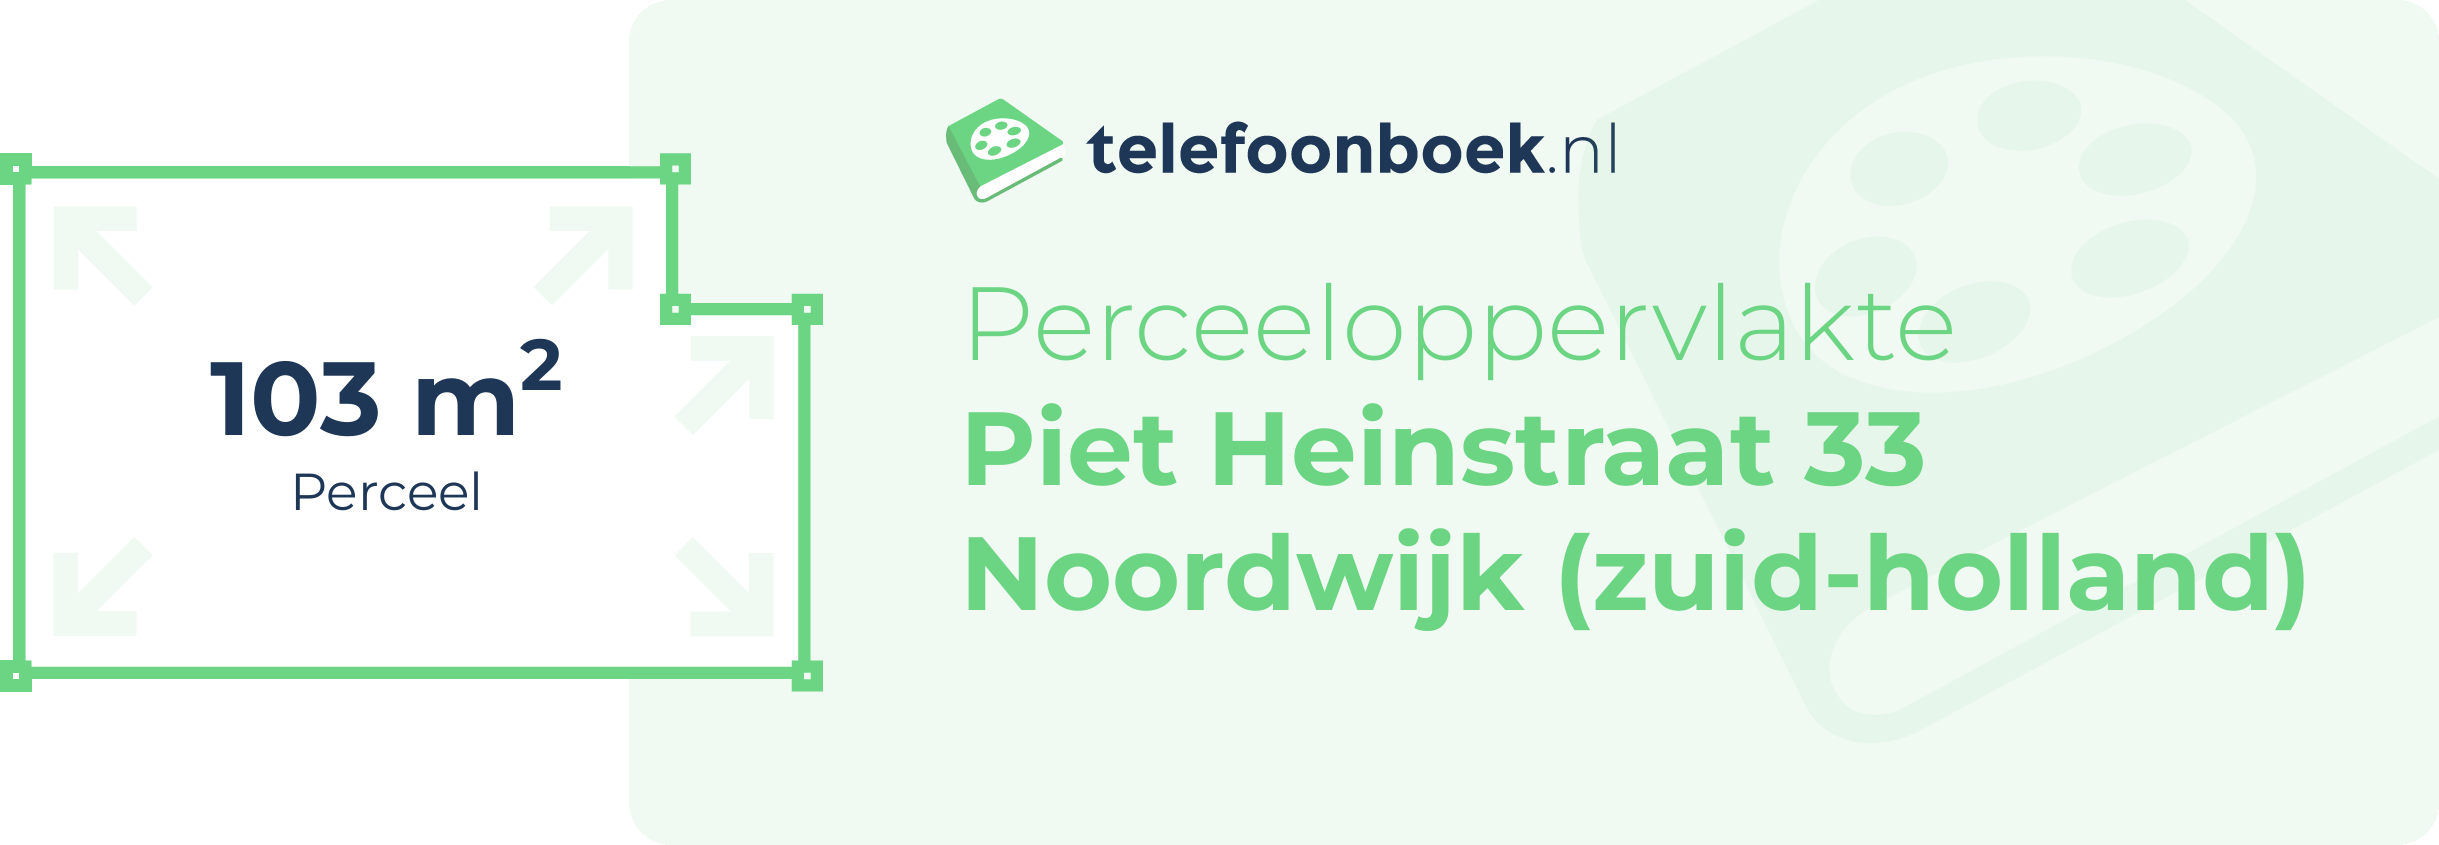 Perceeloppervlakte Piet Heinstraat 33 Noordwijk (Zuid-Holland)